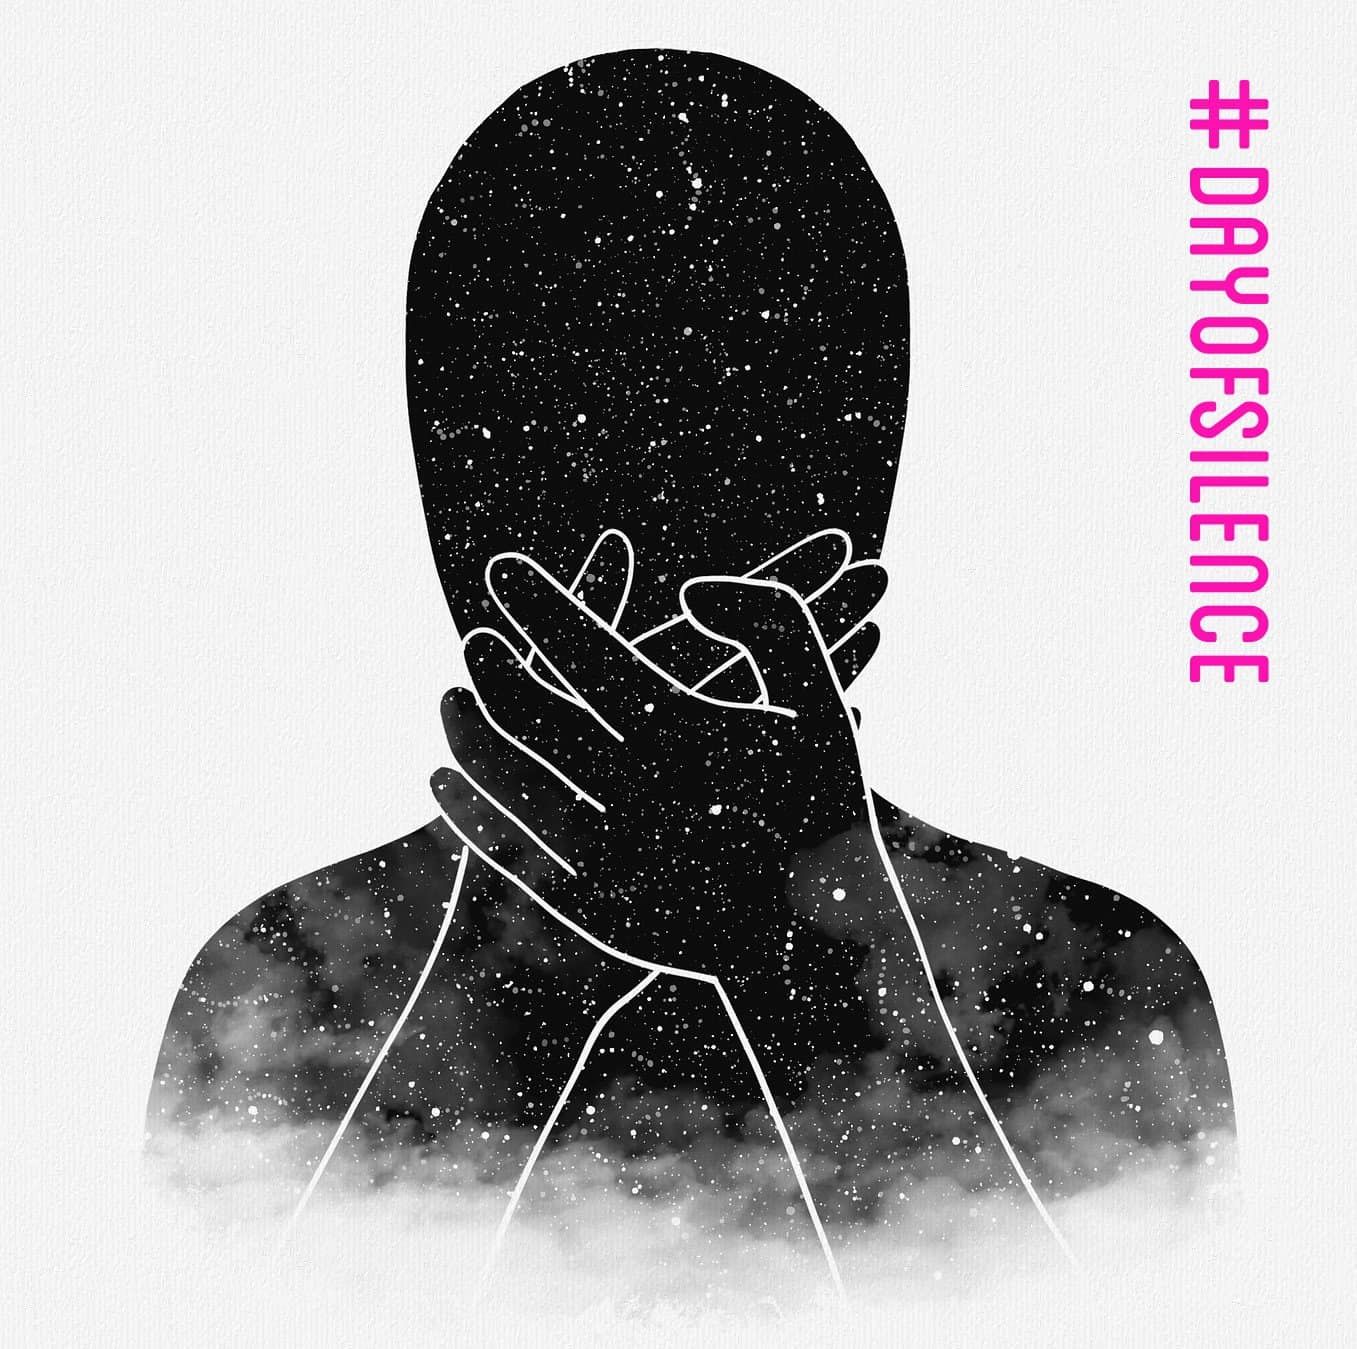 Das Bild zeigt die Silhouette einer Person, die vom Sternenhimmel ausgefüllt wird. Daneben ist senkrecht der Hashtag #dayofsilence in pinker Schrift gesetzt